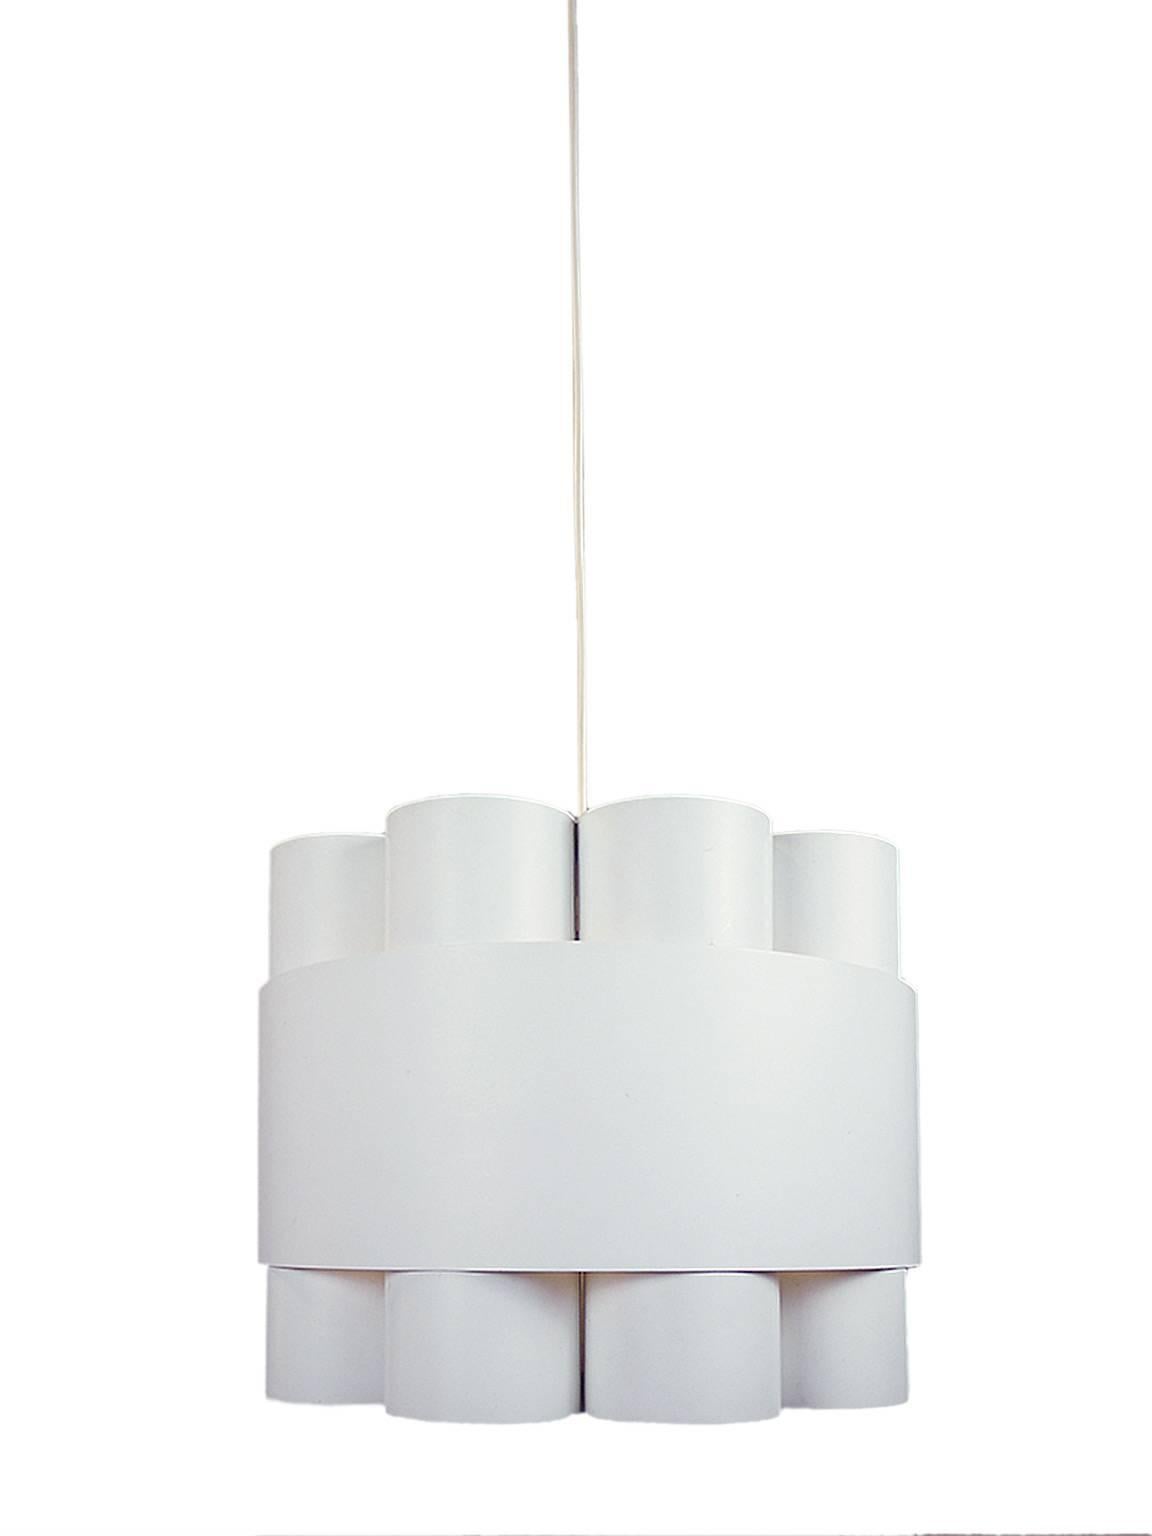 Elegant Jo Hammerborg pendant lamp dating from 1970. The rarest Fog & Mørup light. 

Measures: width 15.7